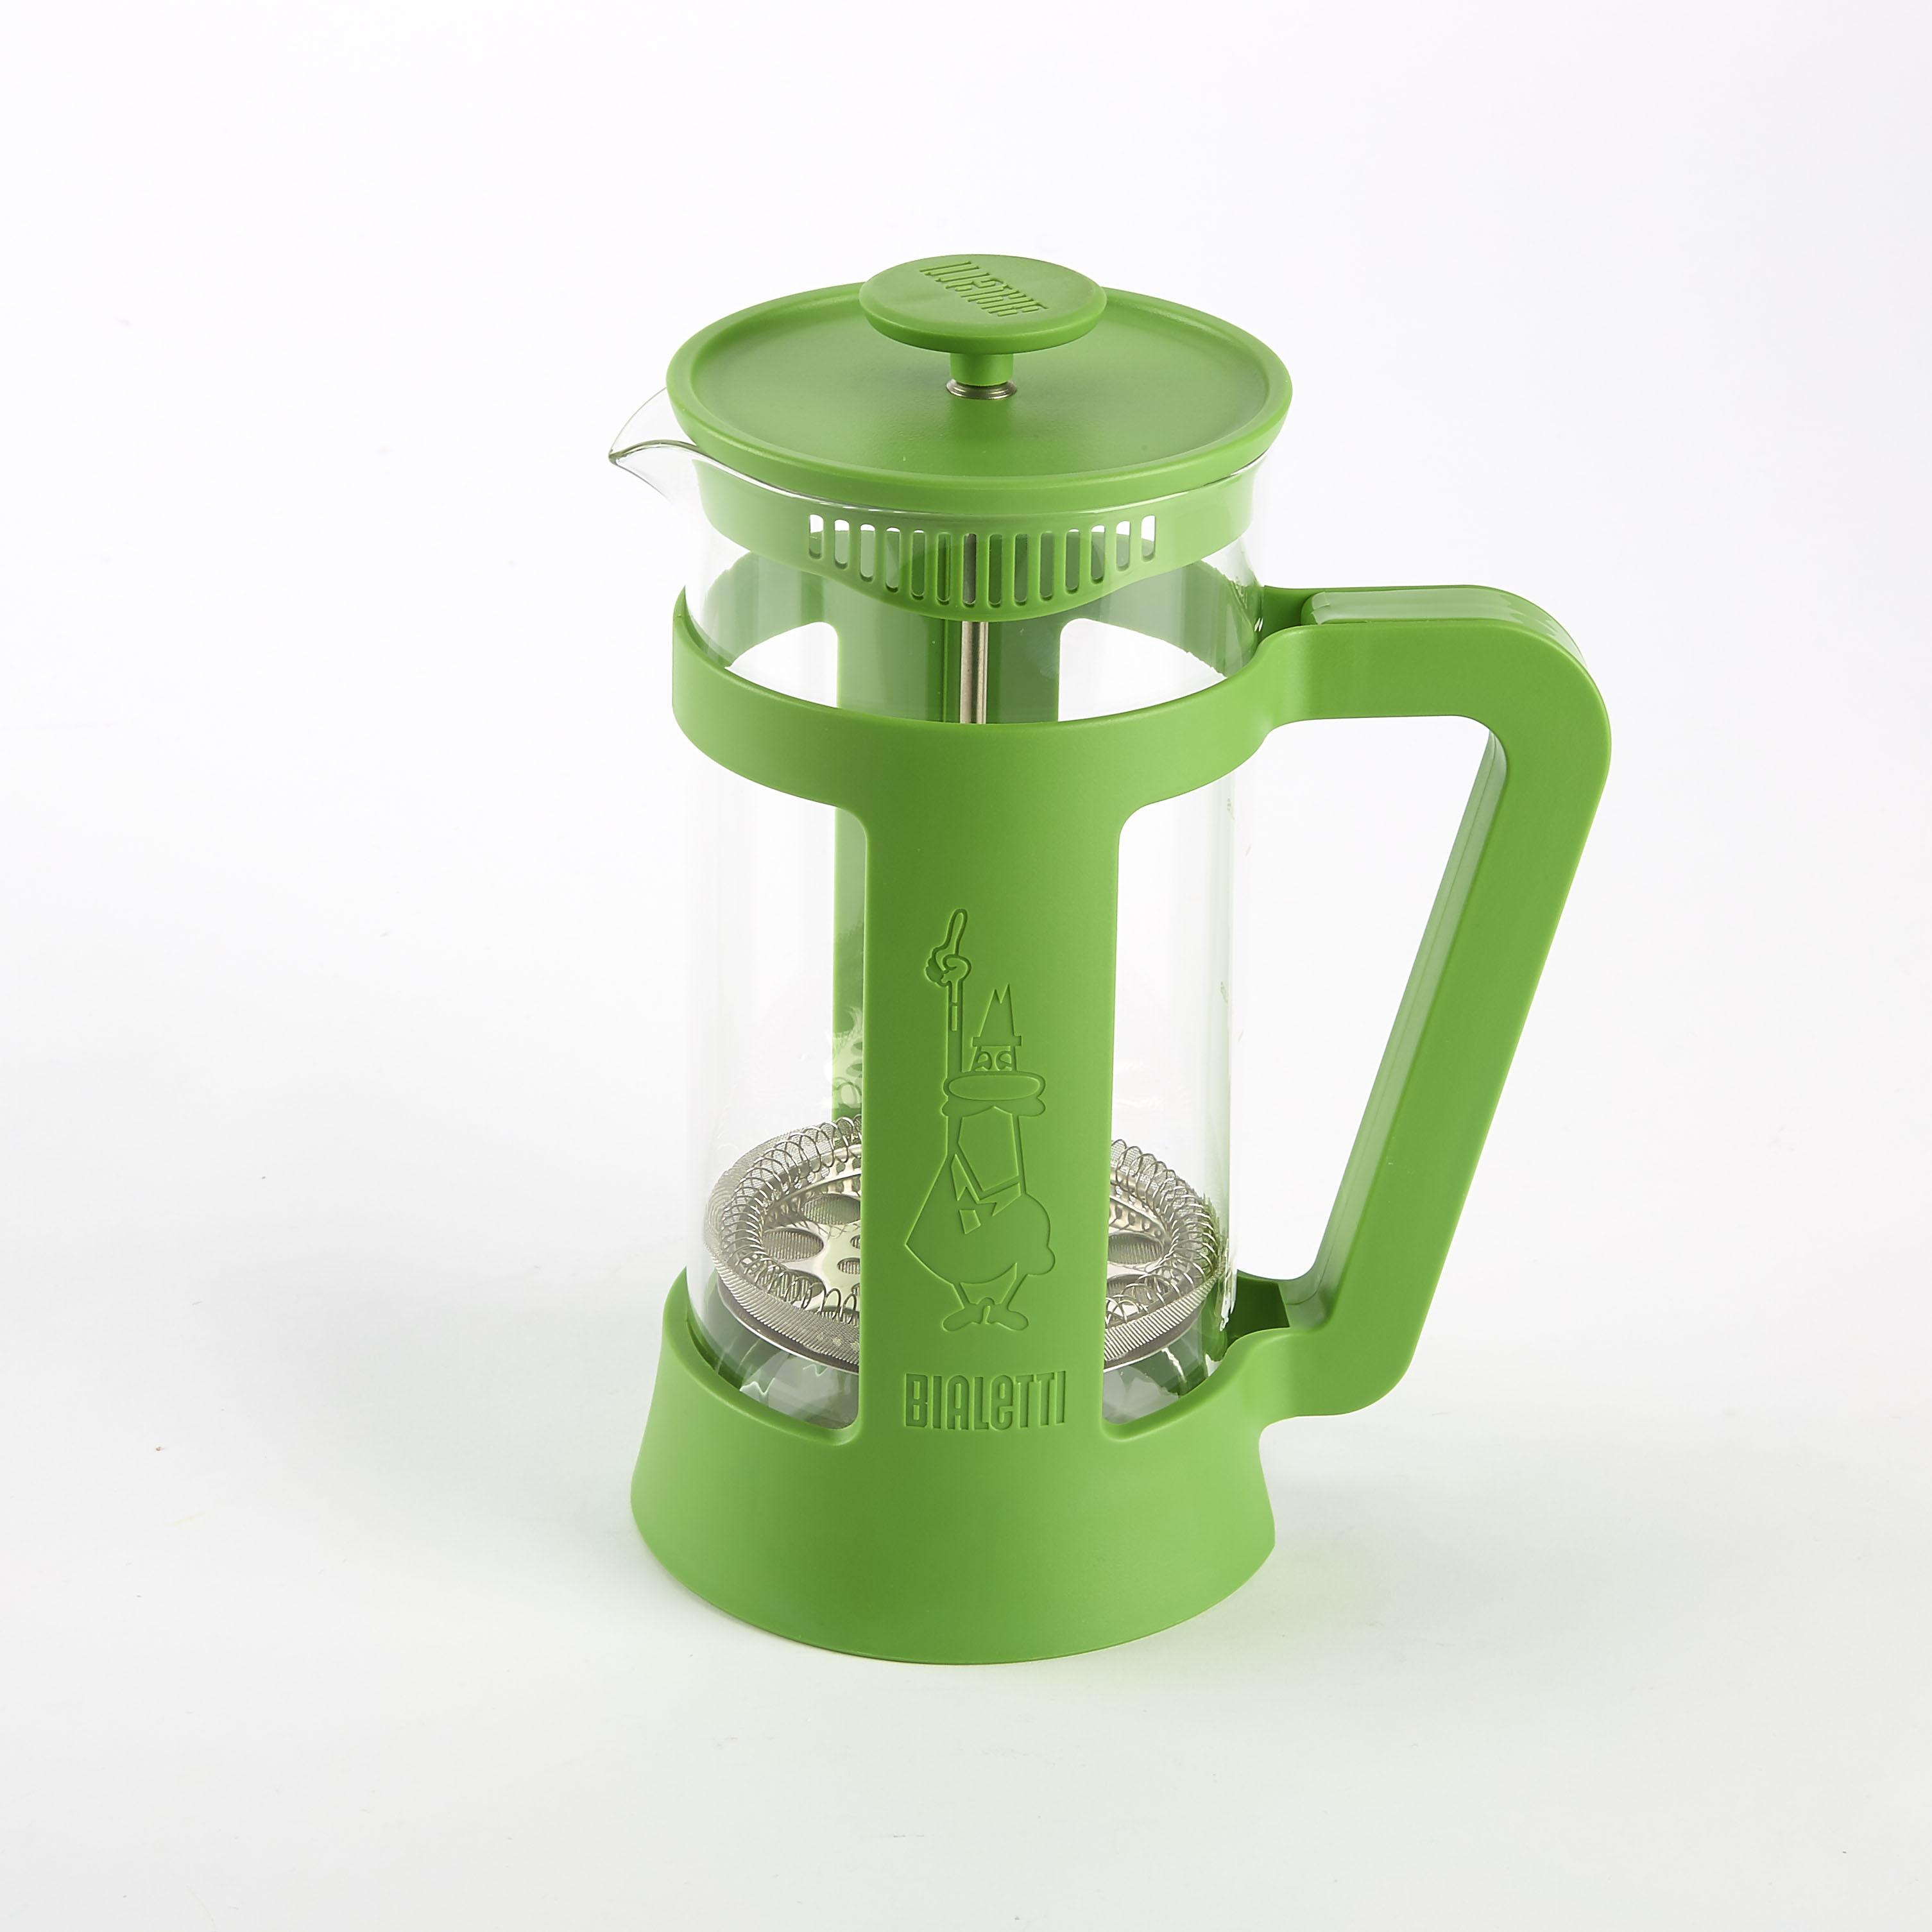 Bialetti coffee press in green